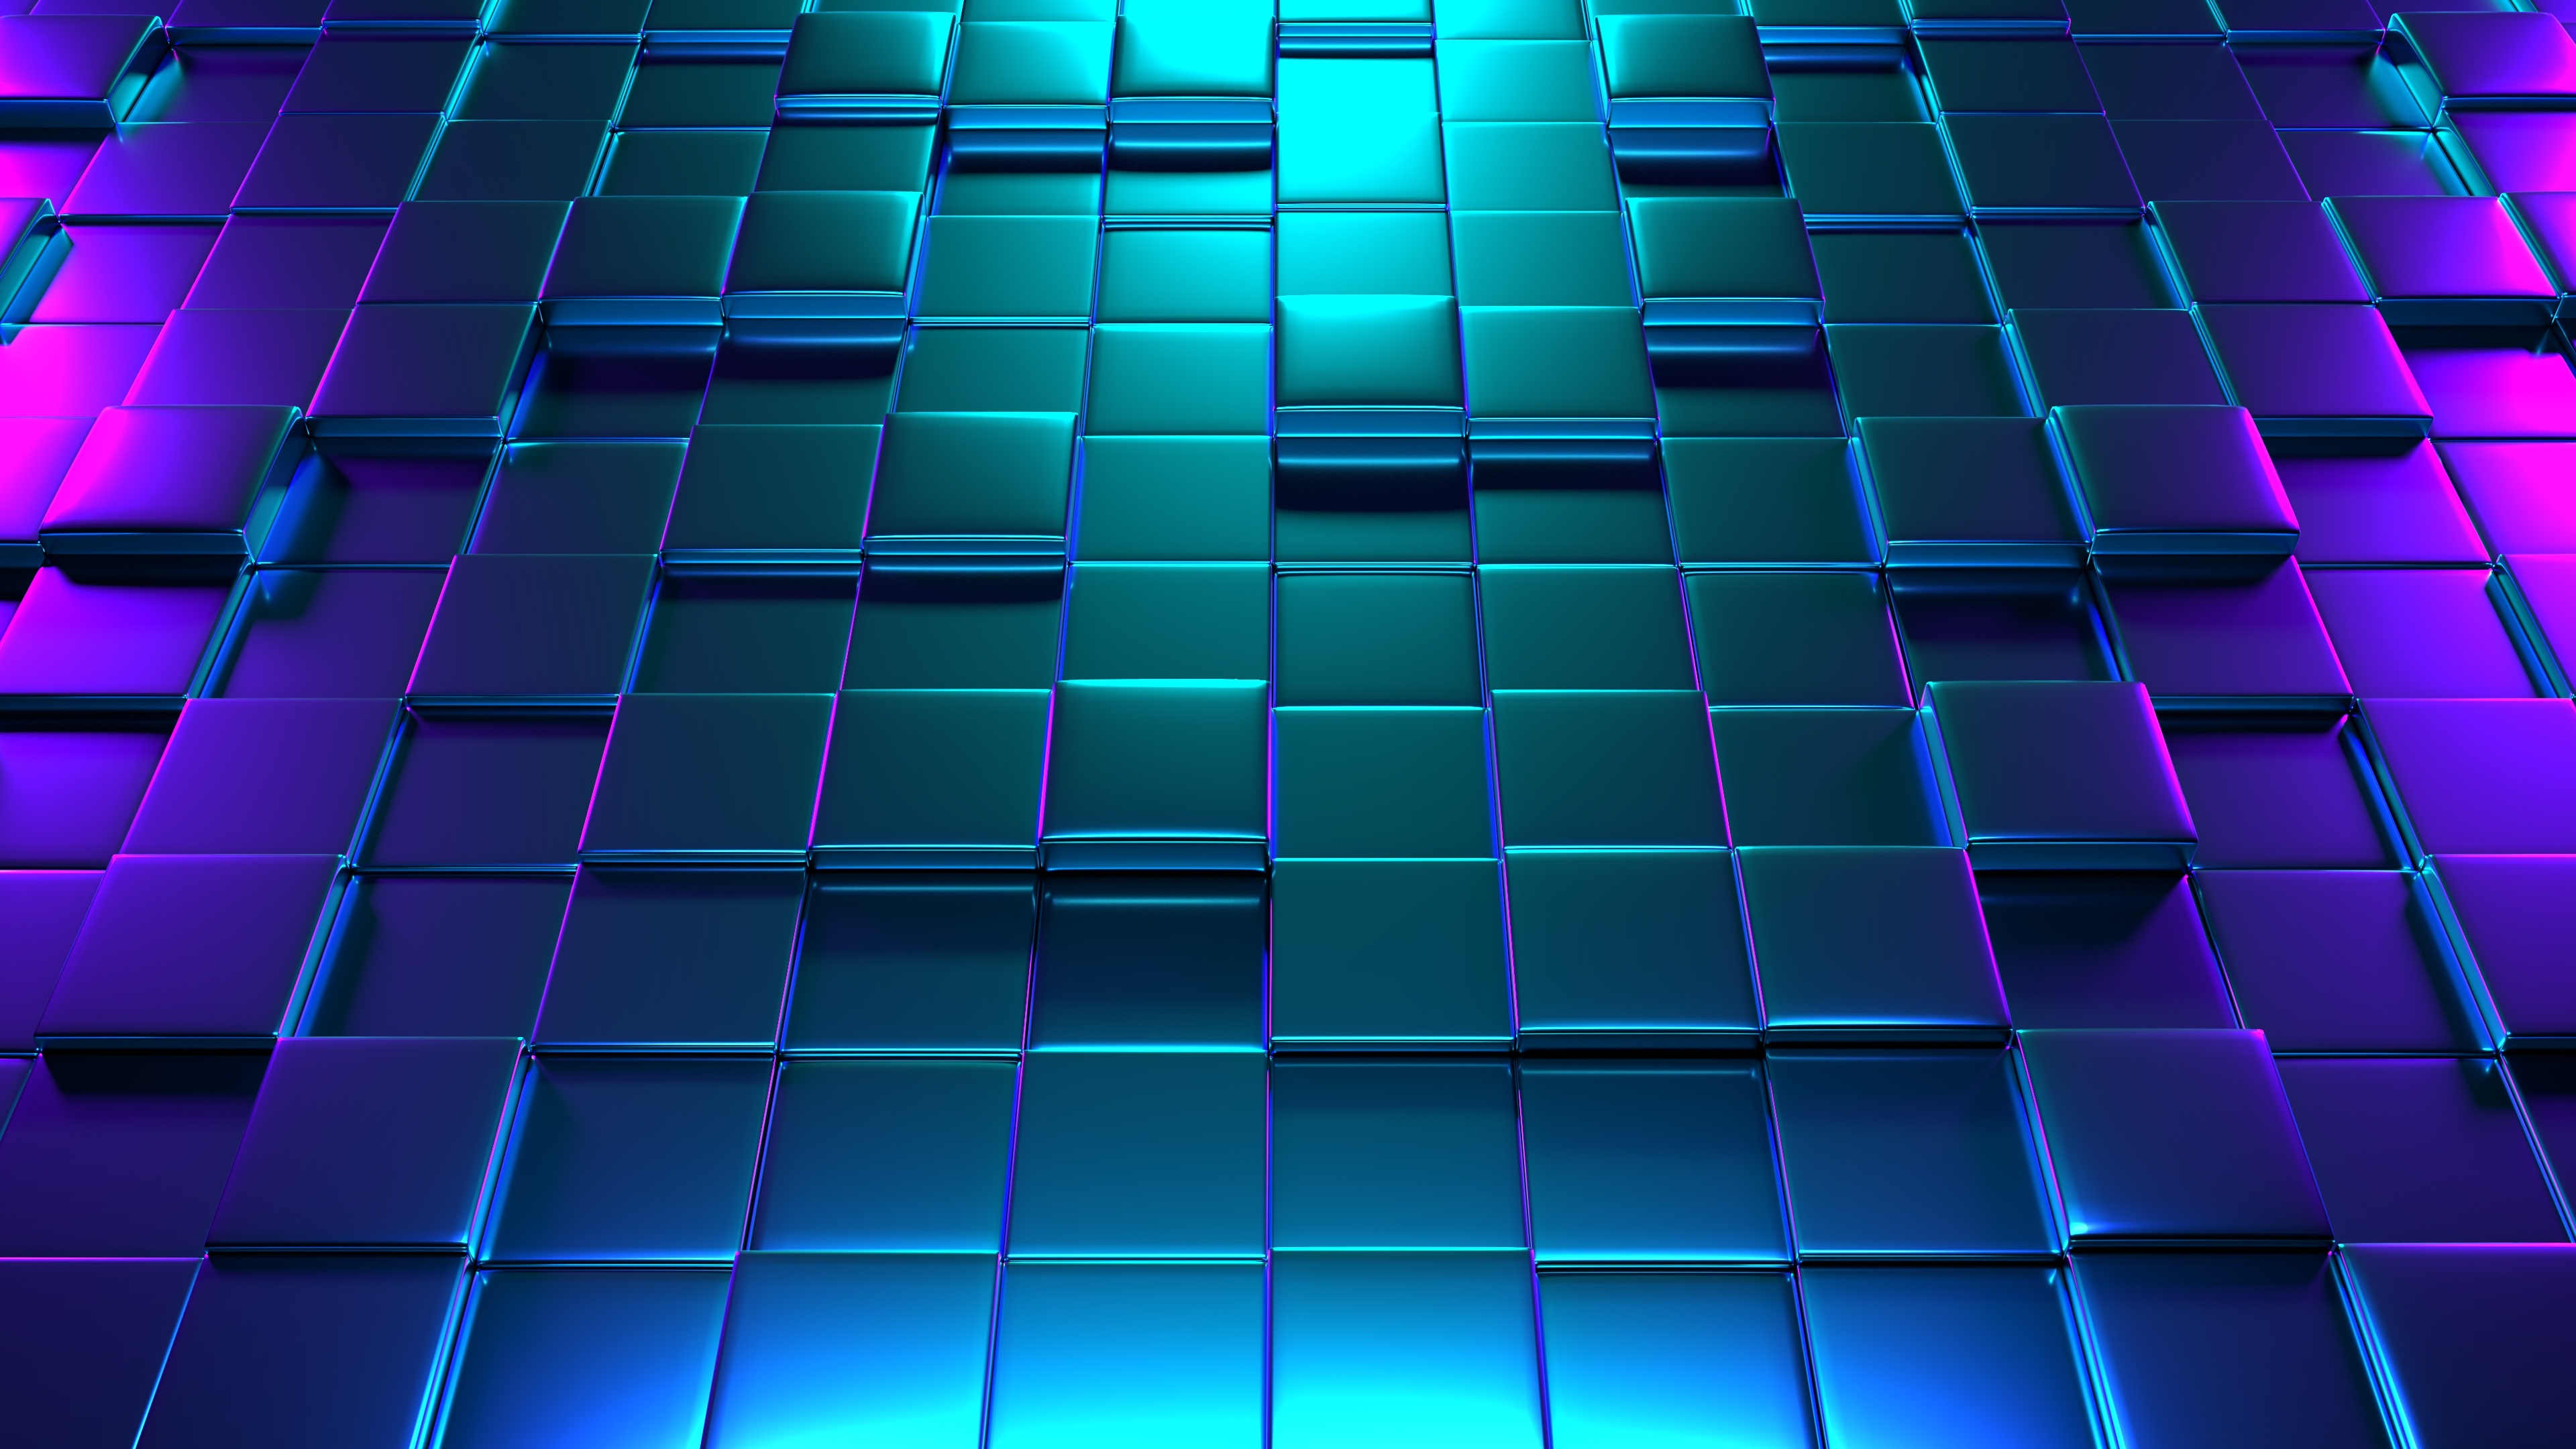 Hãy thử trải nghiệm thế giới sống động của Cube 3D với độ phân giải 2560x1080 đầy màu sắc và sinh động. Với hình ảnh động và hiệu ứng bắt mắt, hình nền Cube 3D sẽ mang đến cho bạn một trải nghiệm tuyệt vời khó quên!